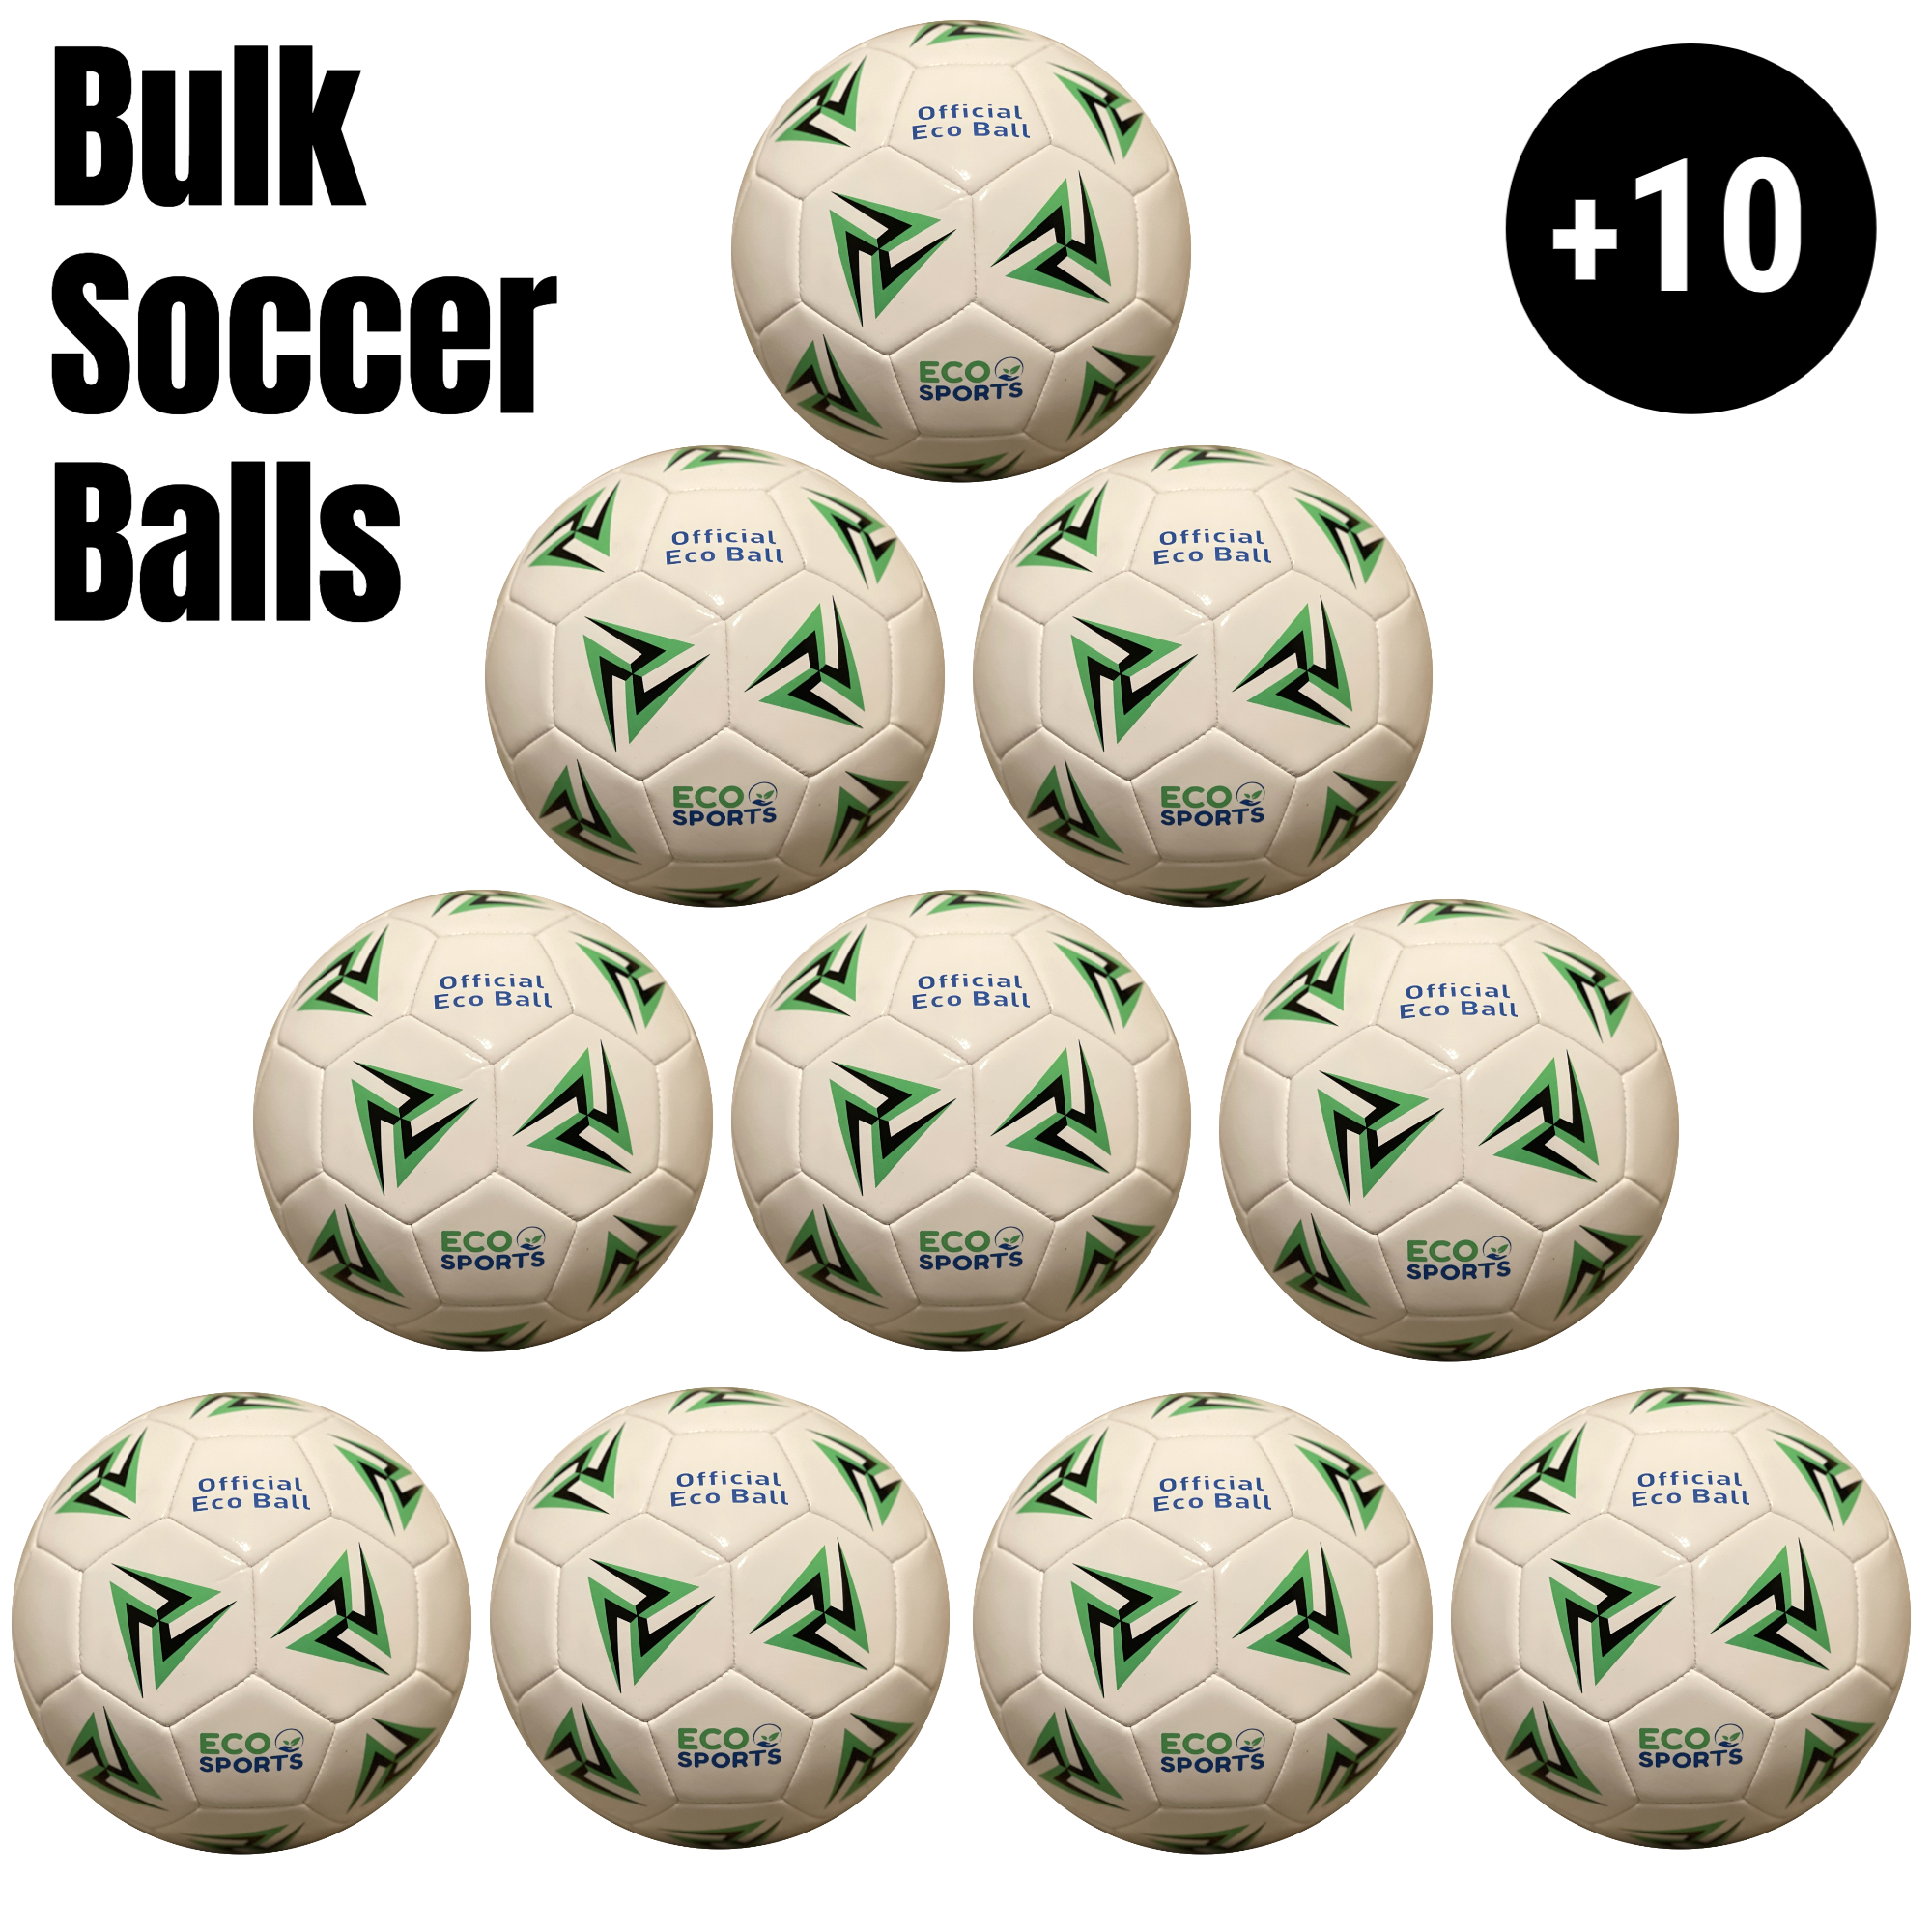 Bulk Soccer Balls - Deflated Size 5, 4, & 3 Soccer Balls In Bulk